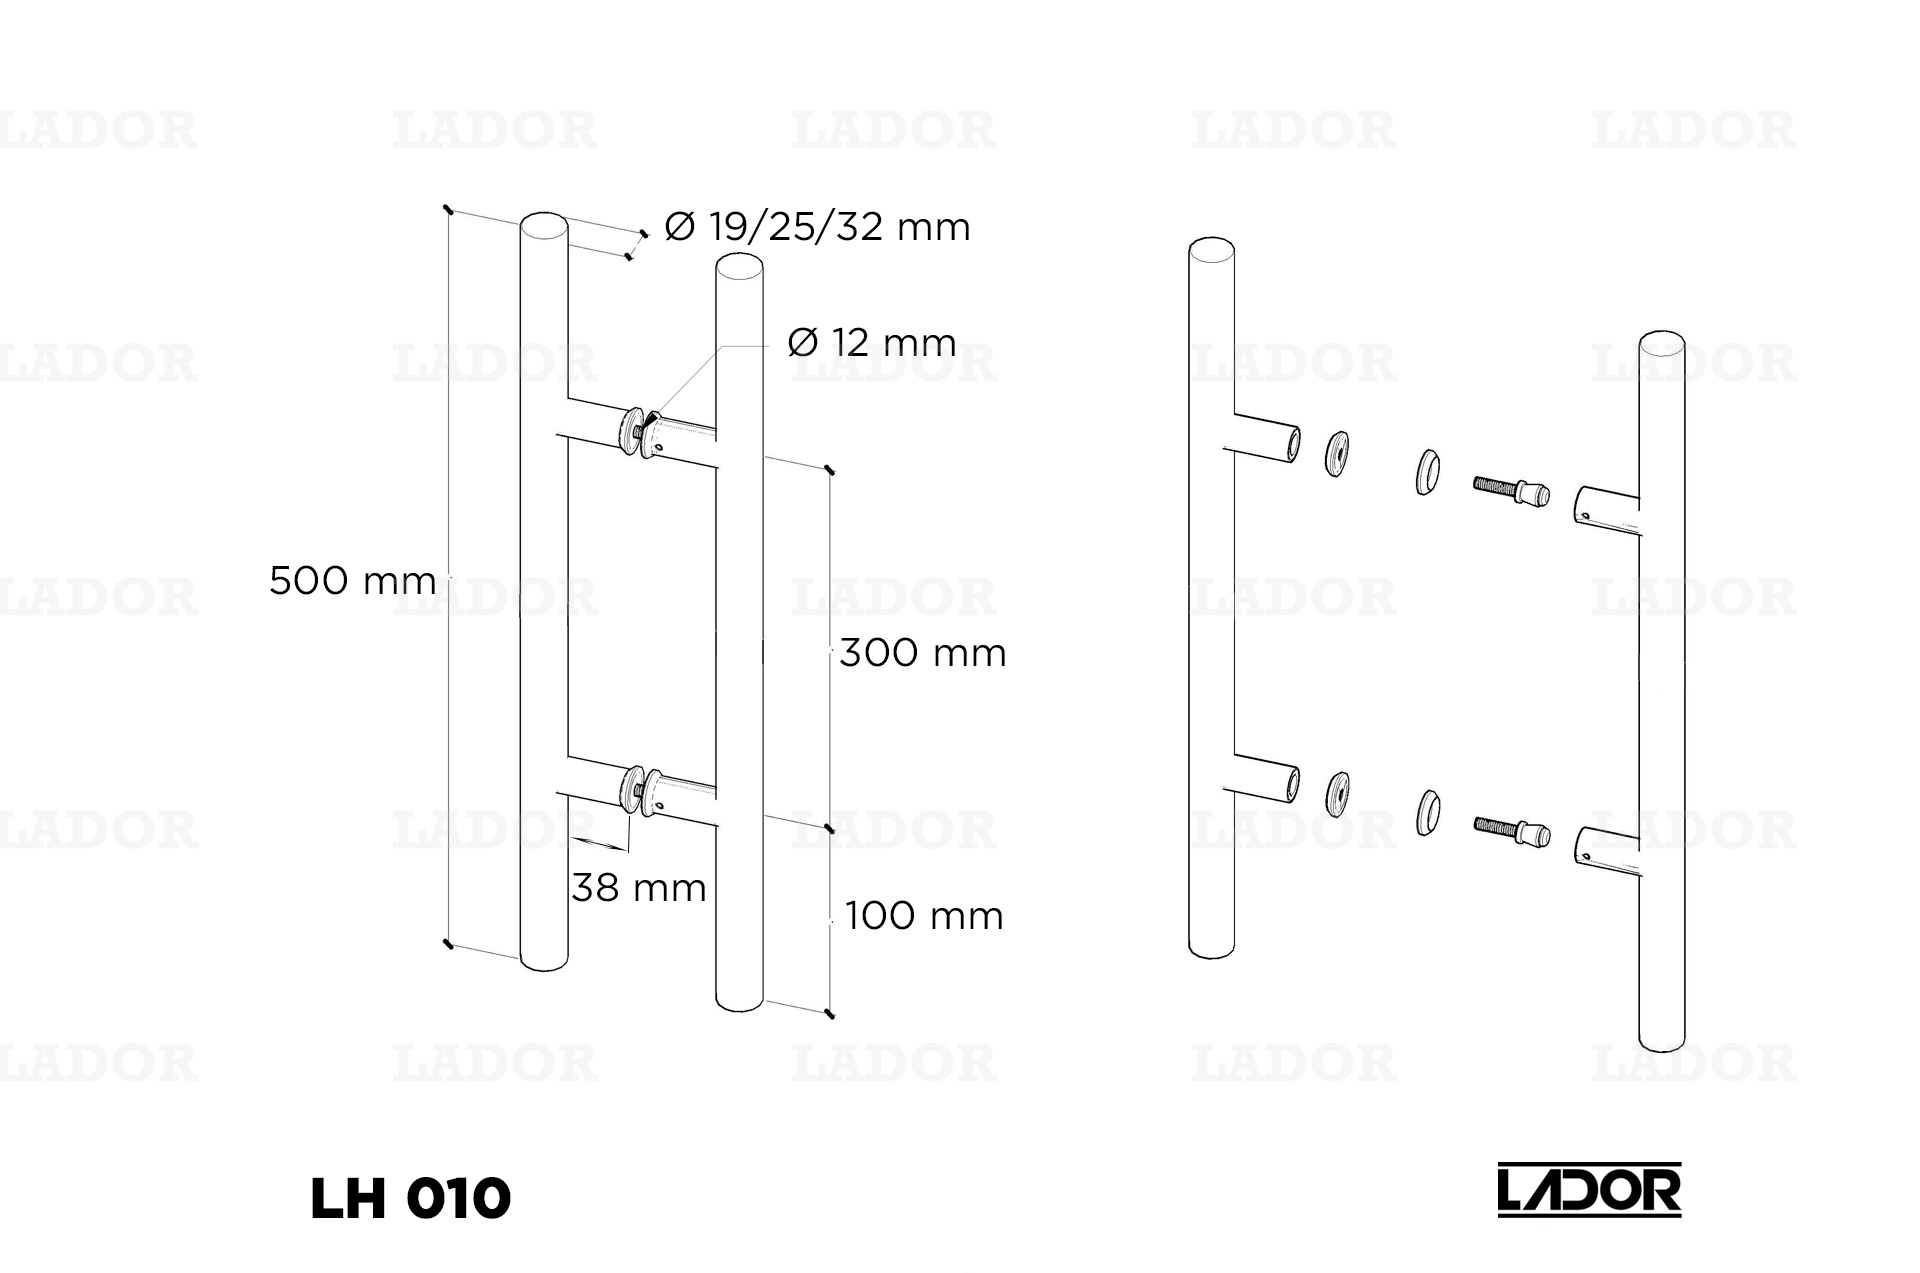 Glass door handle LADOR LH 010 (500 mm)